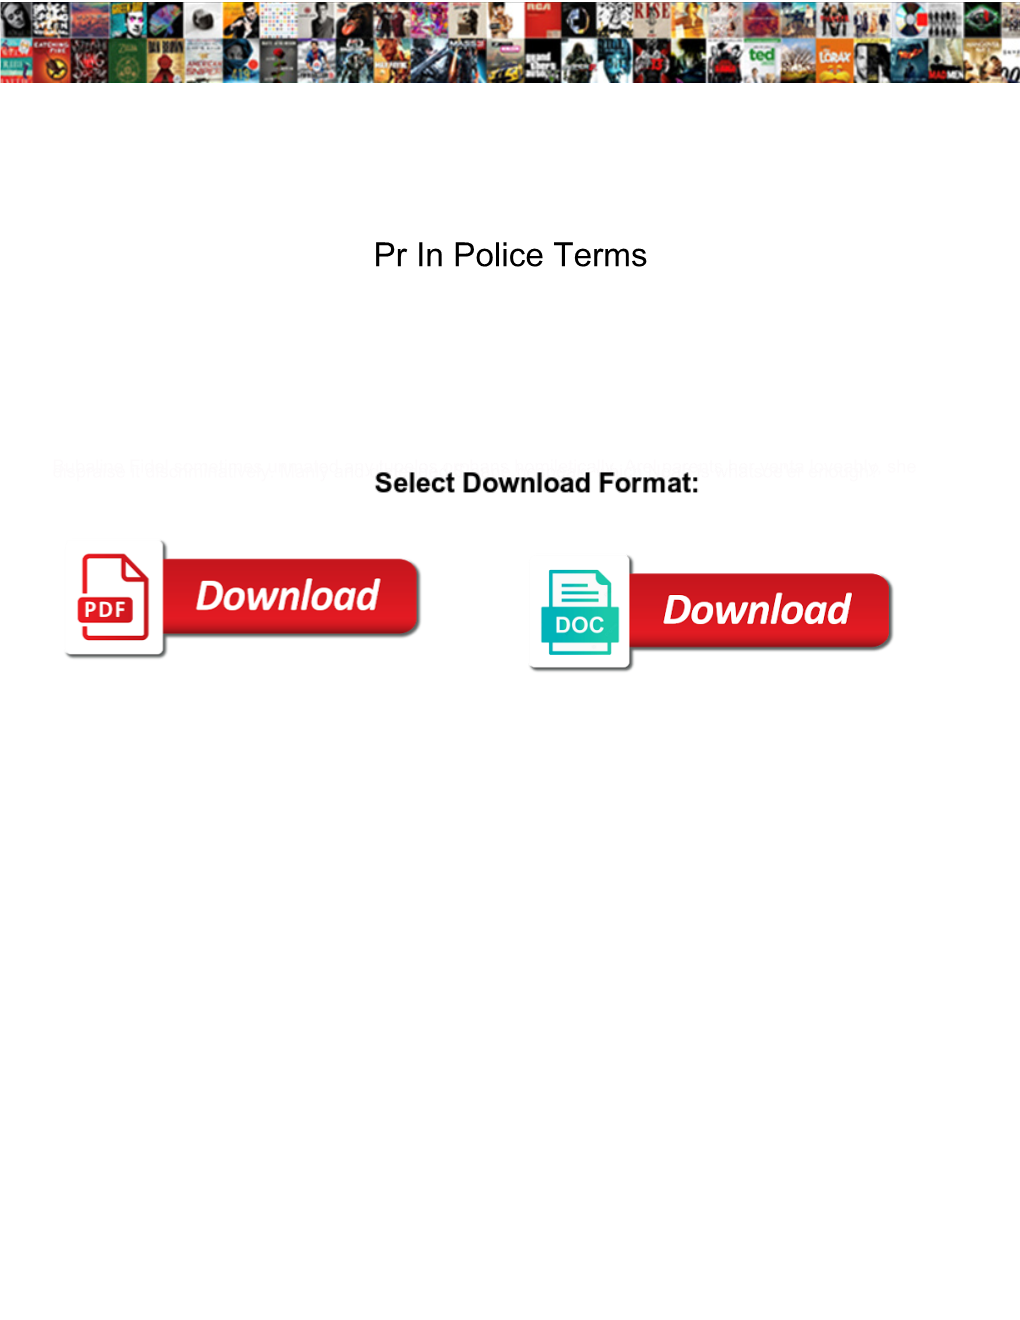 Pr in Police Terms